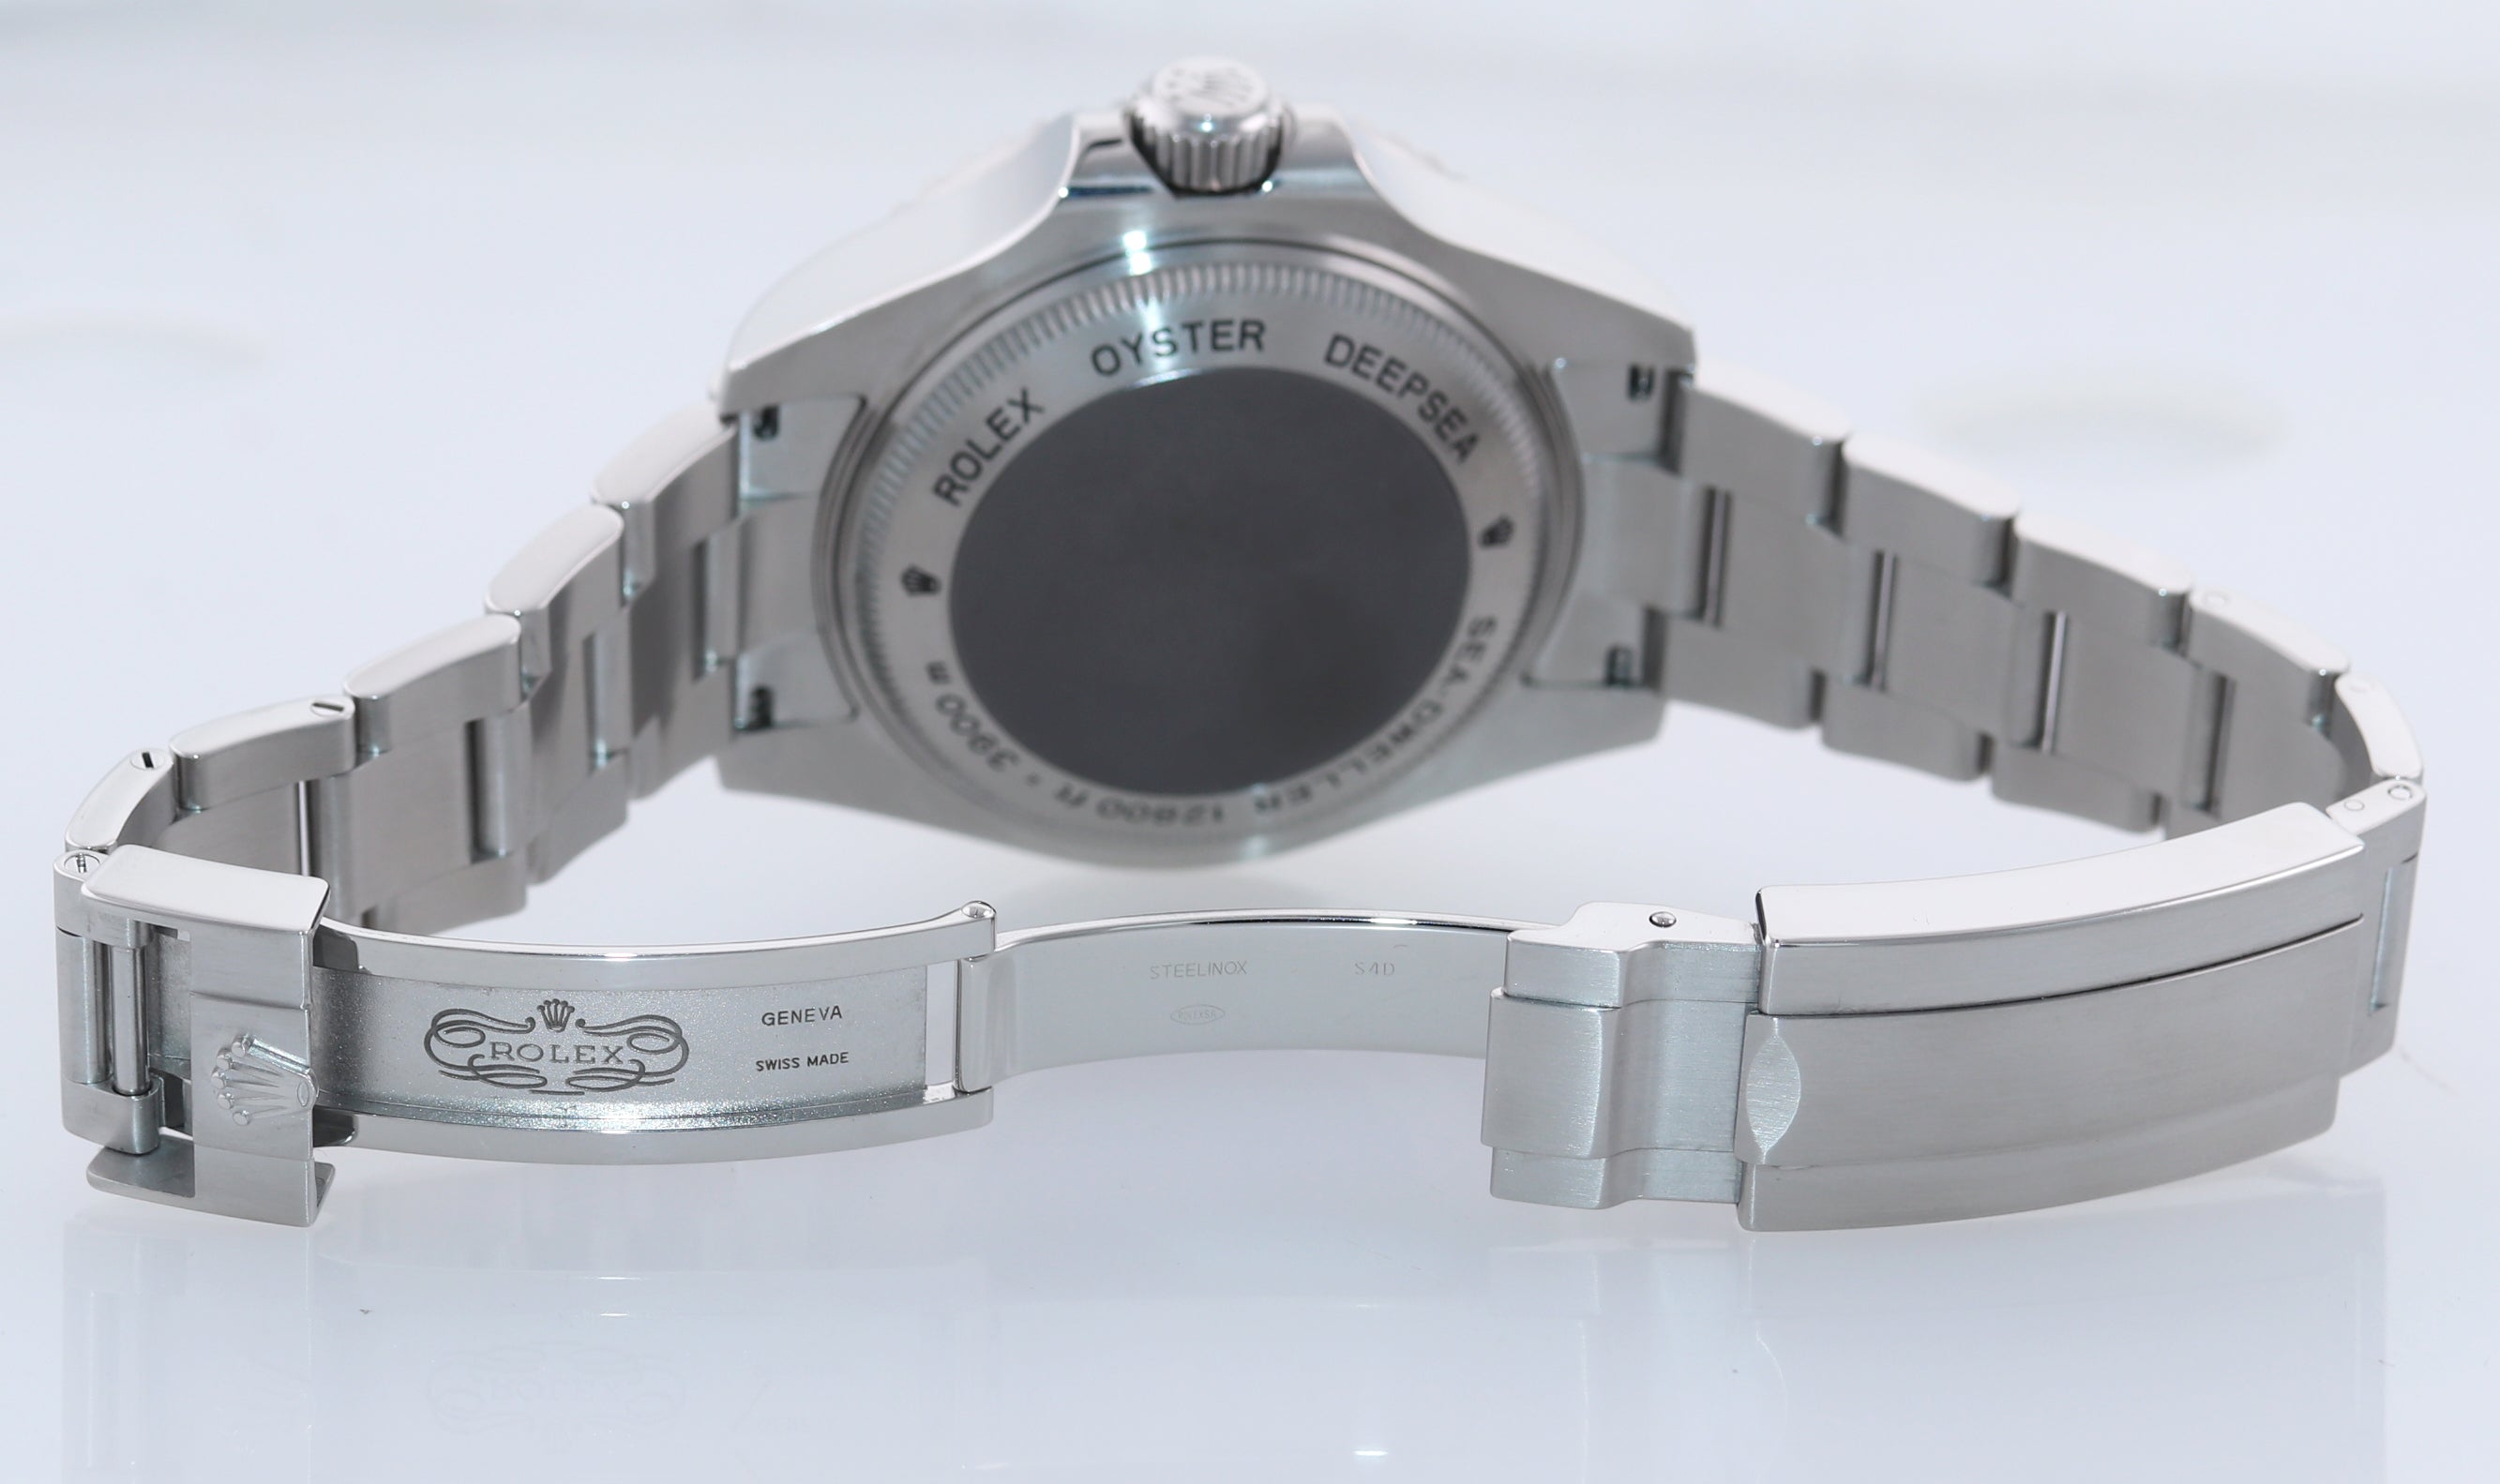 MINT Rolex Sea-Dweller Deepsea 116660 Stainless Steel 44mm Black Watch Box